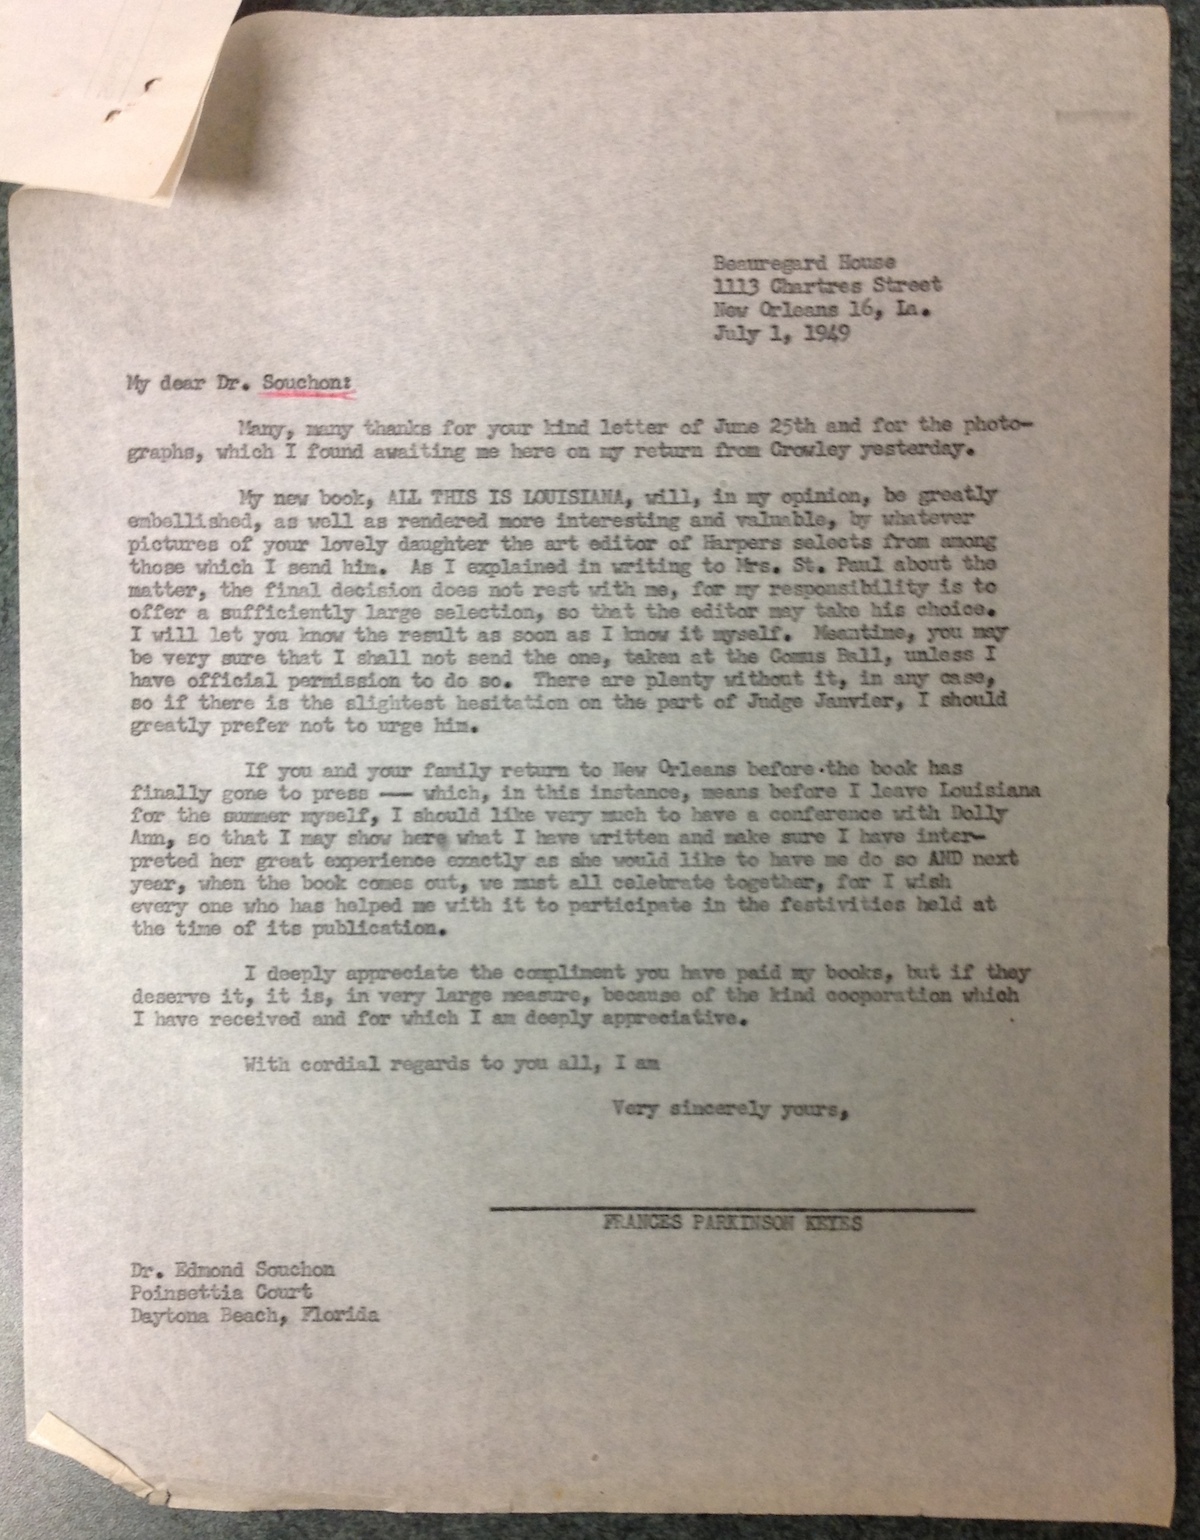 FPK to Dr. Edmond Souchon, July 1, 1949